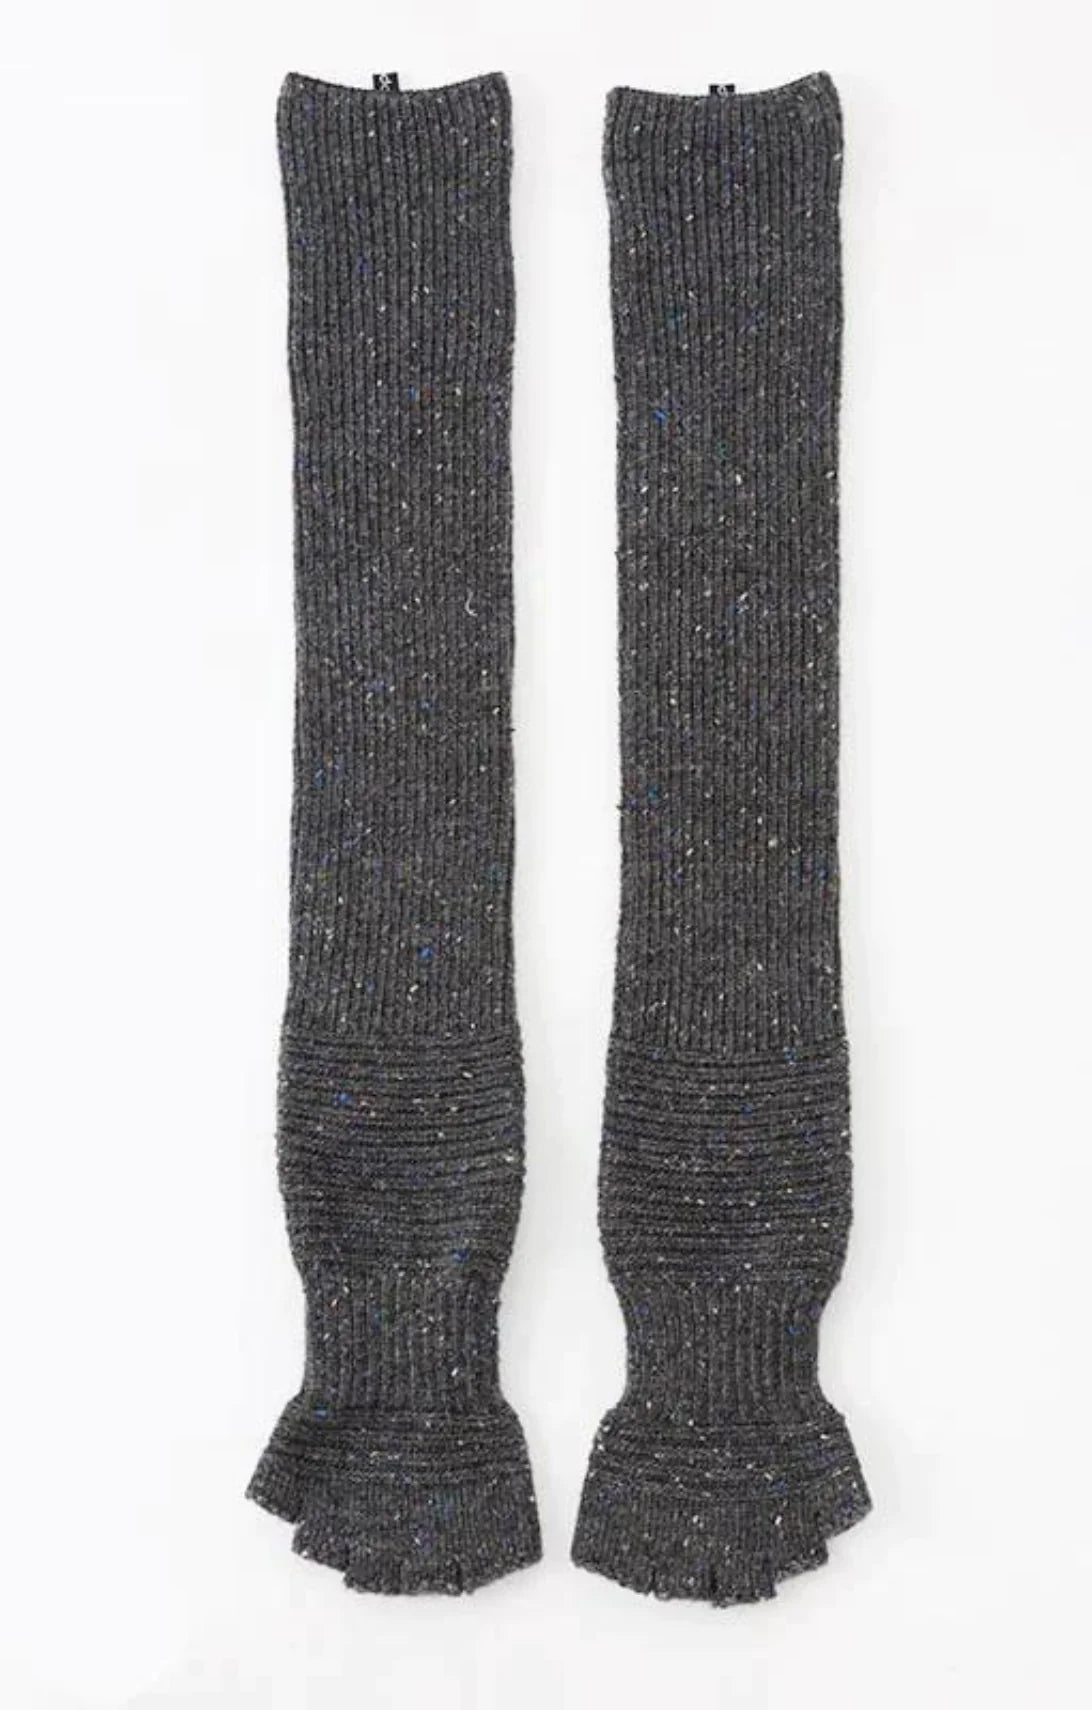 Knitido Toe Socks Crochet Look Lace Black Nepal